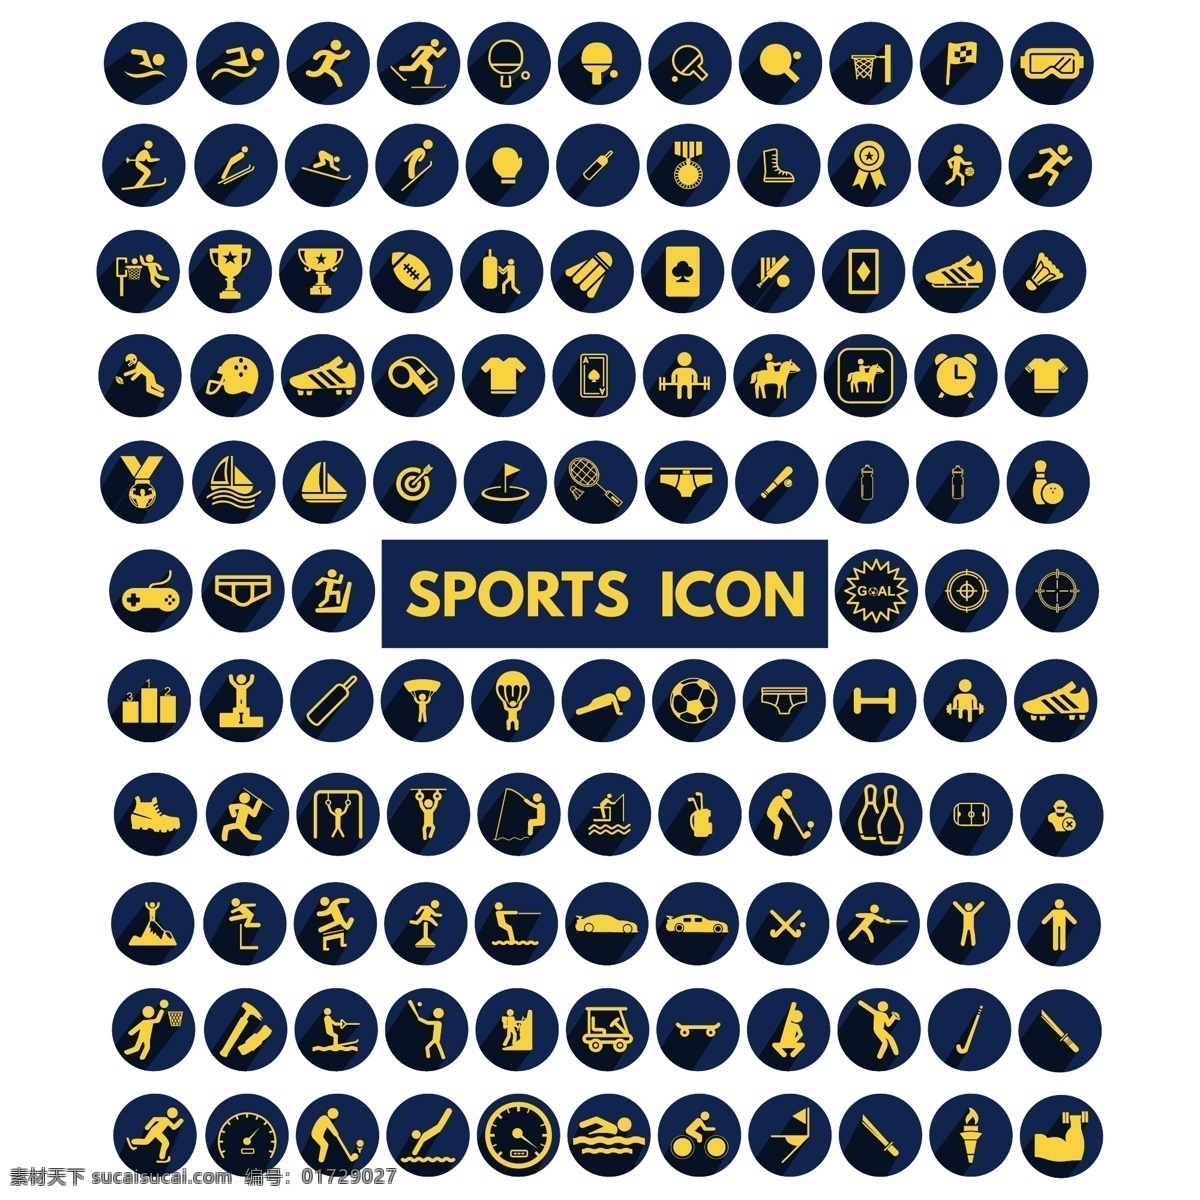 运动图标图片 运动图标 各种运动图标 运动标志 运动 体育运动标志 图标 标志图标 公共标识标志 体育类 篮球 足球